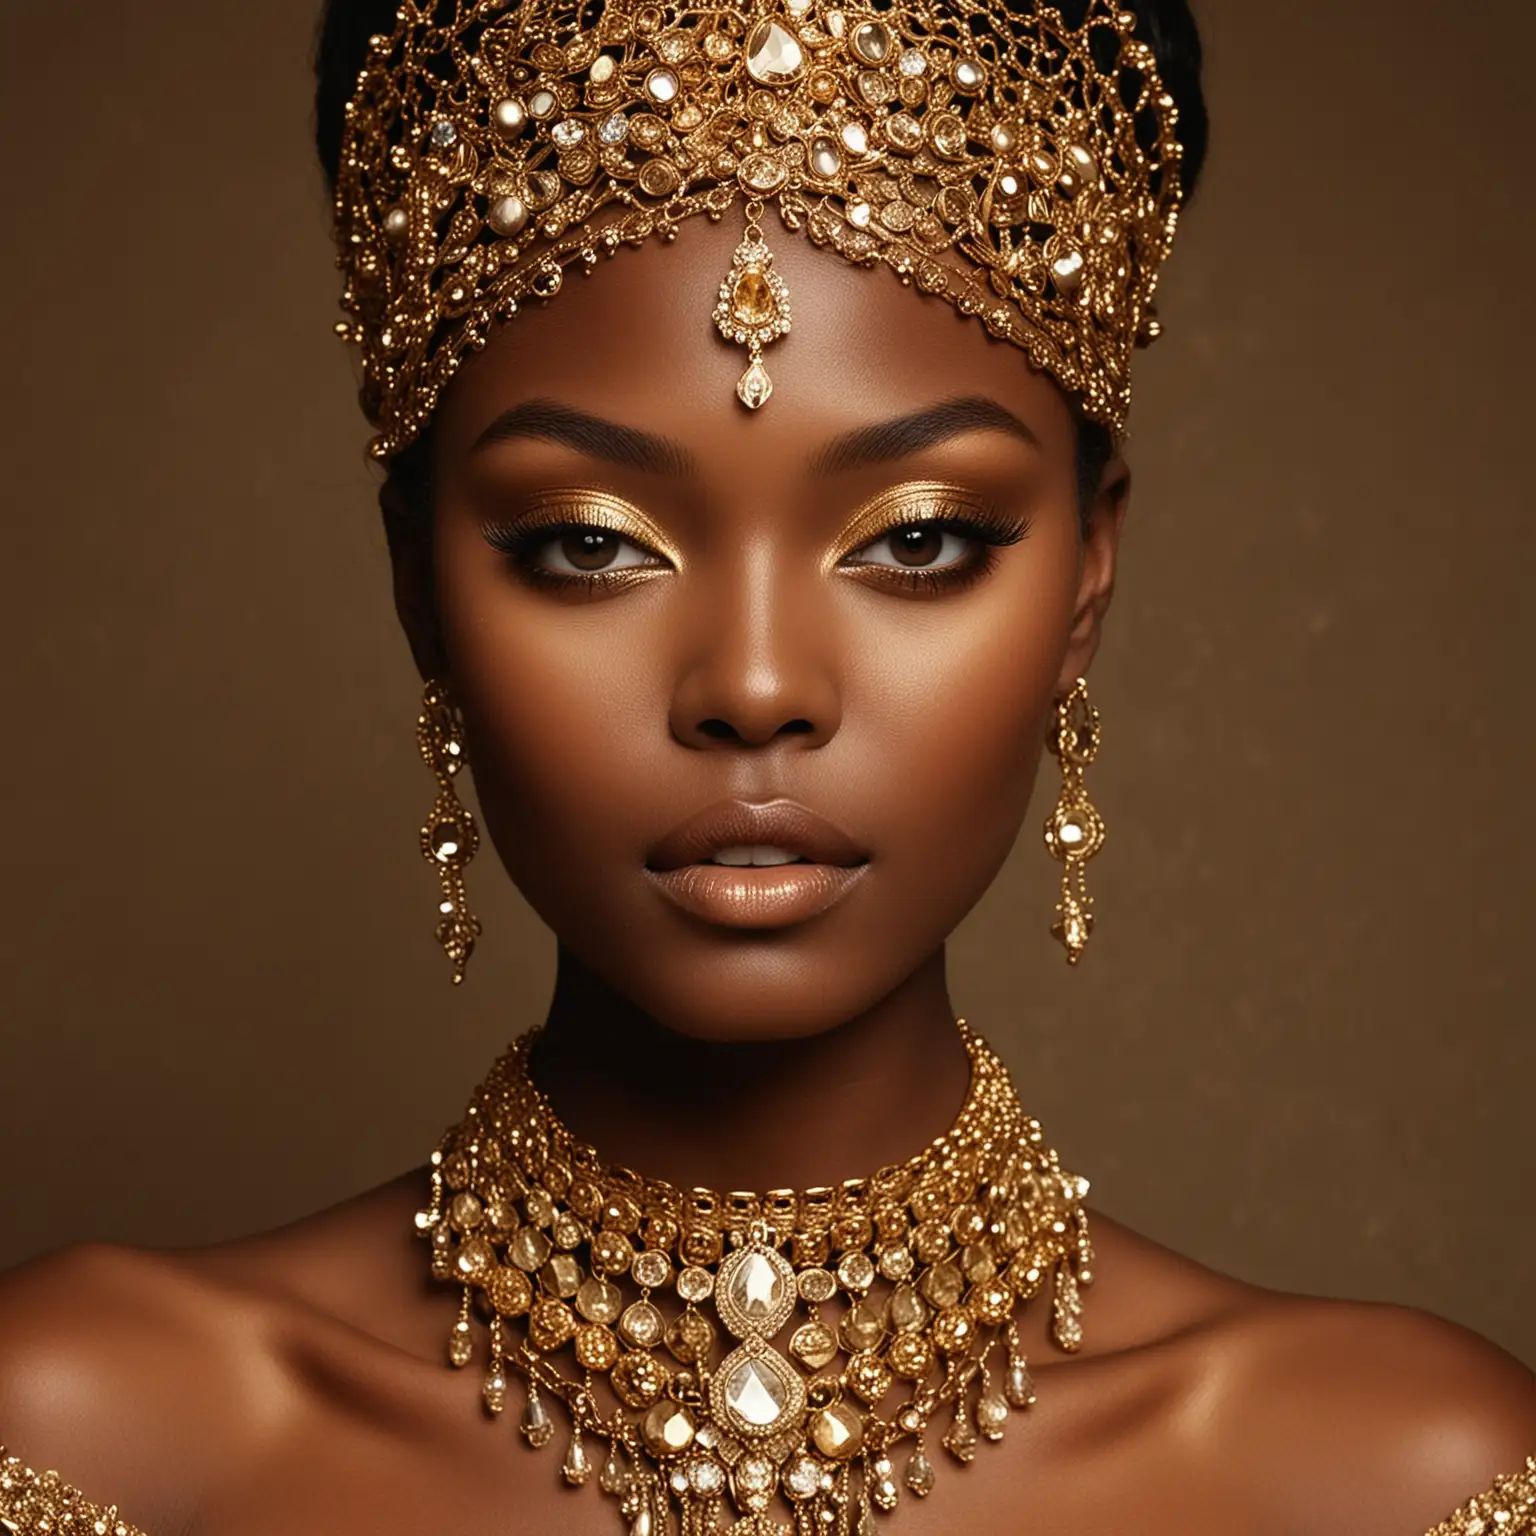 Eleganz in Gold: Ein Bild eines Models mit tiefdunkler Haut, das mit goldenem Lidschatten und glitzerndem Schmuck akzentuiert ist. Die warmen Farbtöne betonen die Schönheit und Eleganz des Gesichts.